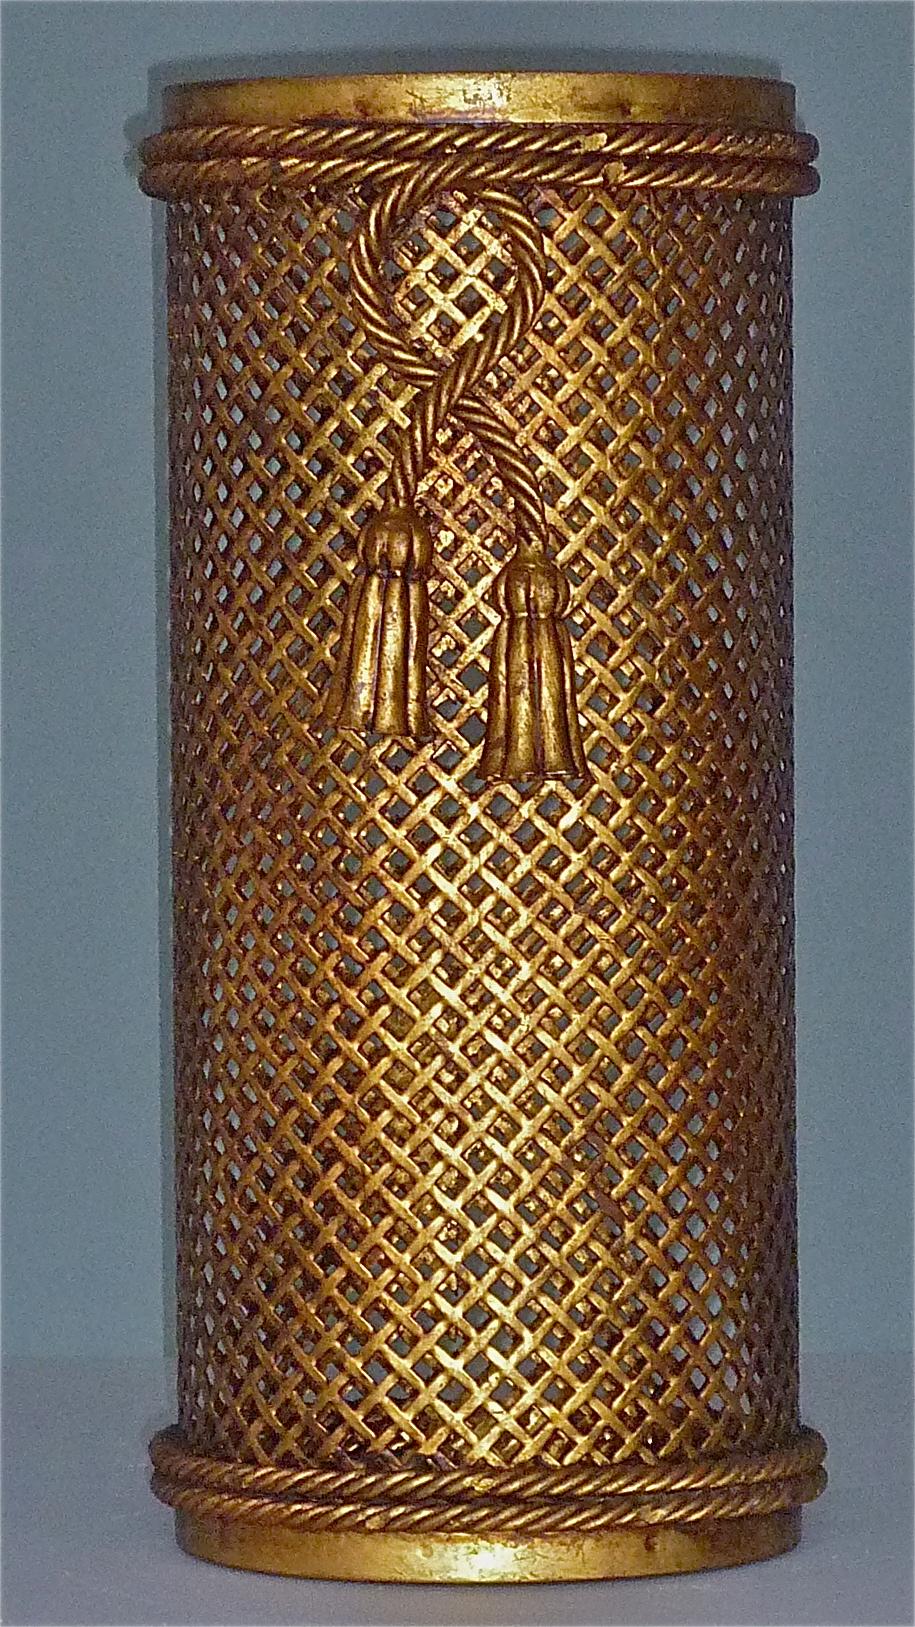 Ein fabelhafter Schirmständer oder Papierkorb im Stil des Hollywood Regency, hergestellt von Li Puma, Italien, um 1950-1960. Es ist aus gewebtem, vergoldetem Metall auf rotem Grund gefertigt und mit einem Seil und geknoteten Quasten versehen, die